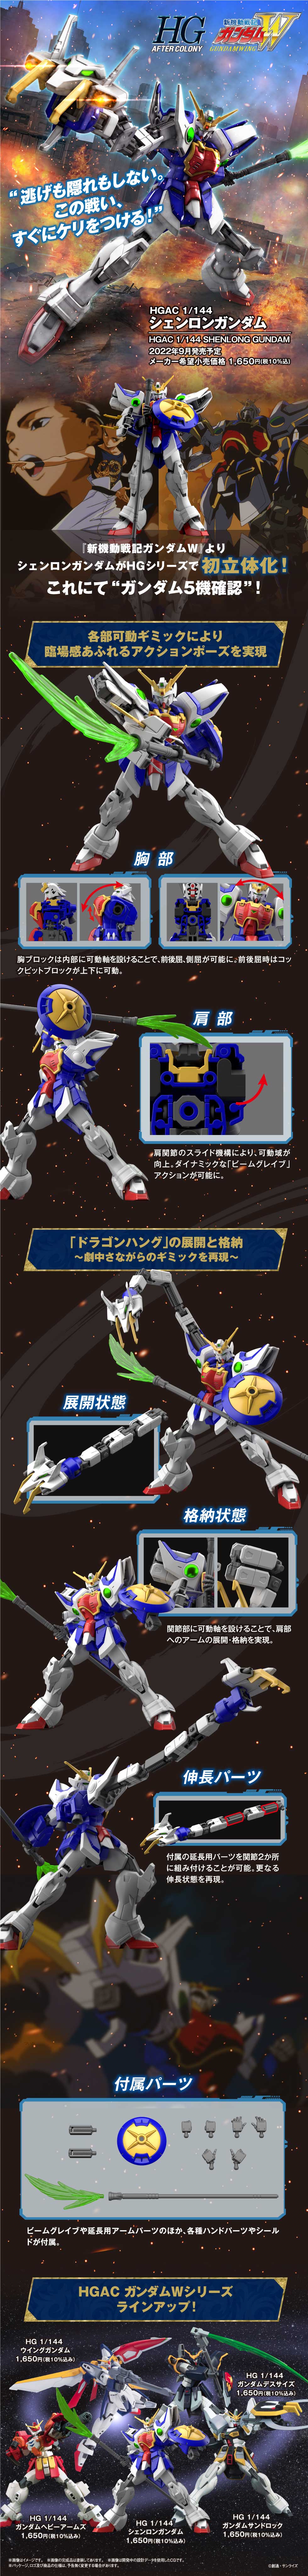 HGAC 1/144 No.242 XXXG-01S Shen Long Gundam